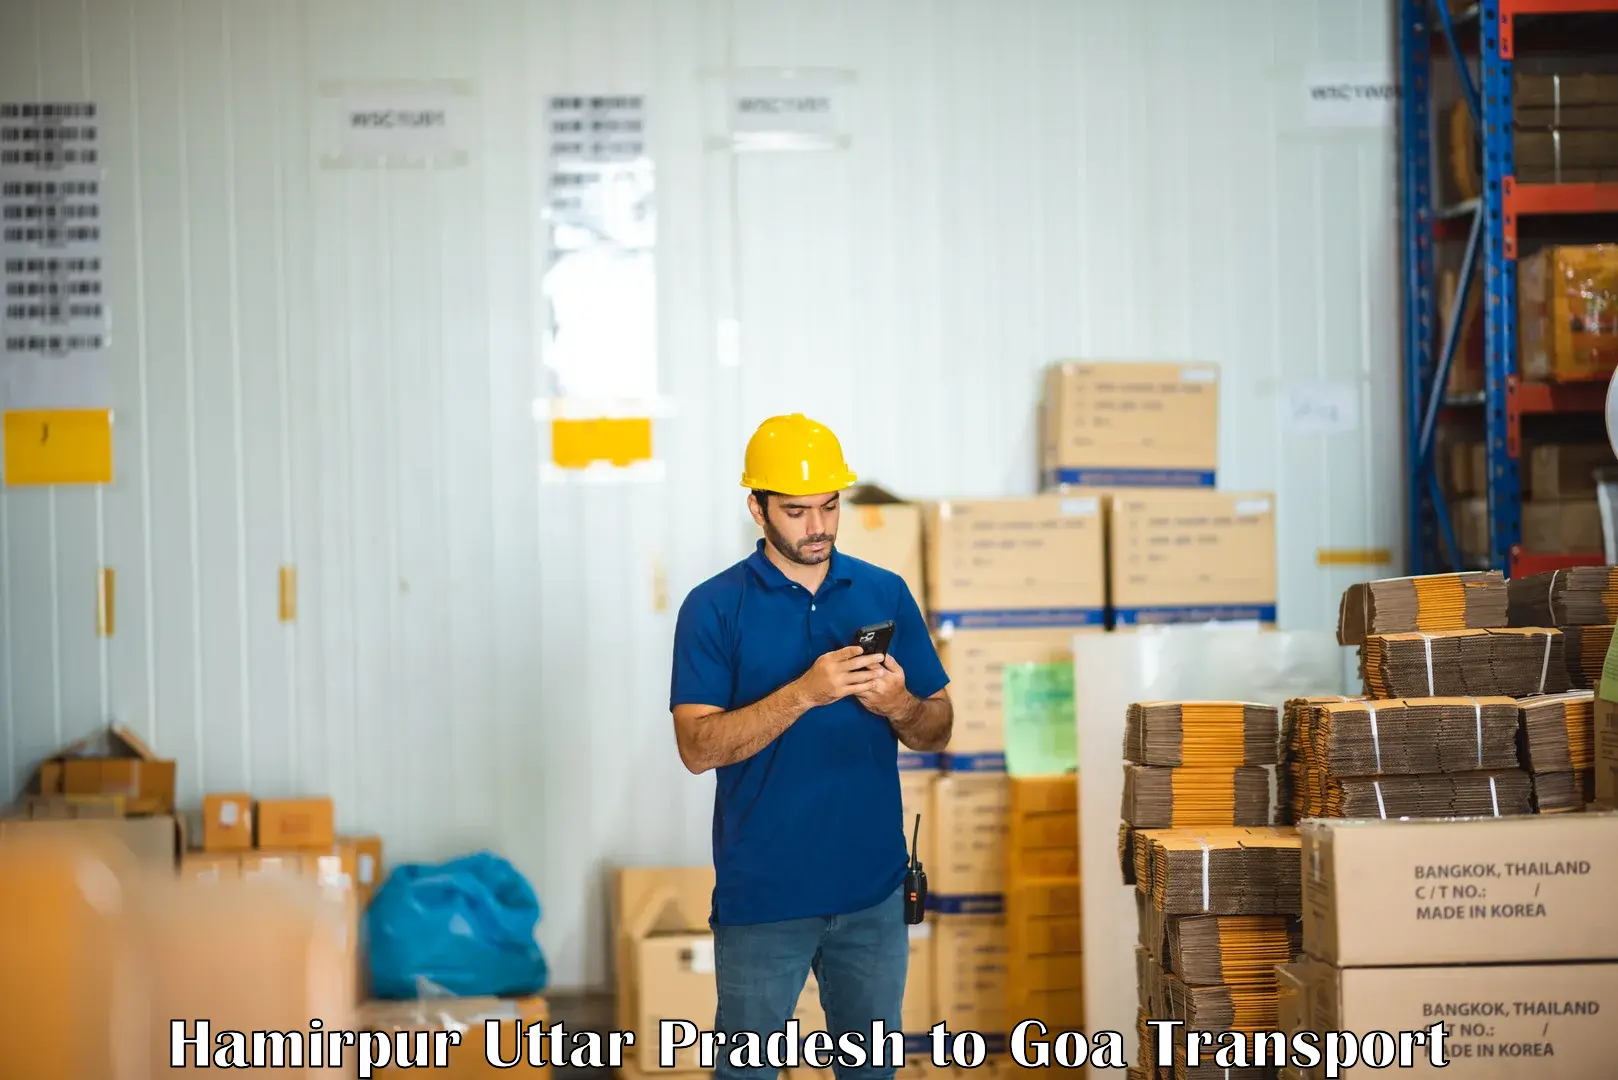 Container transport service Hamirpur Uttar Pradesh to Mormugao Port